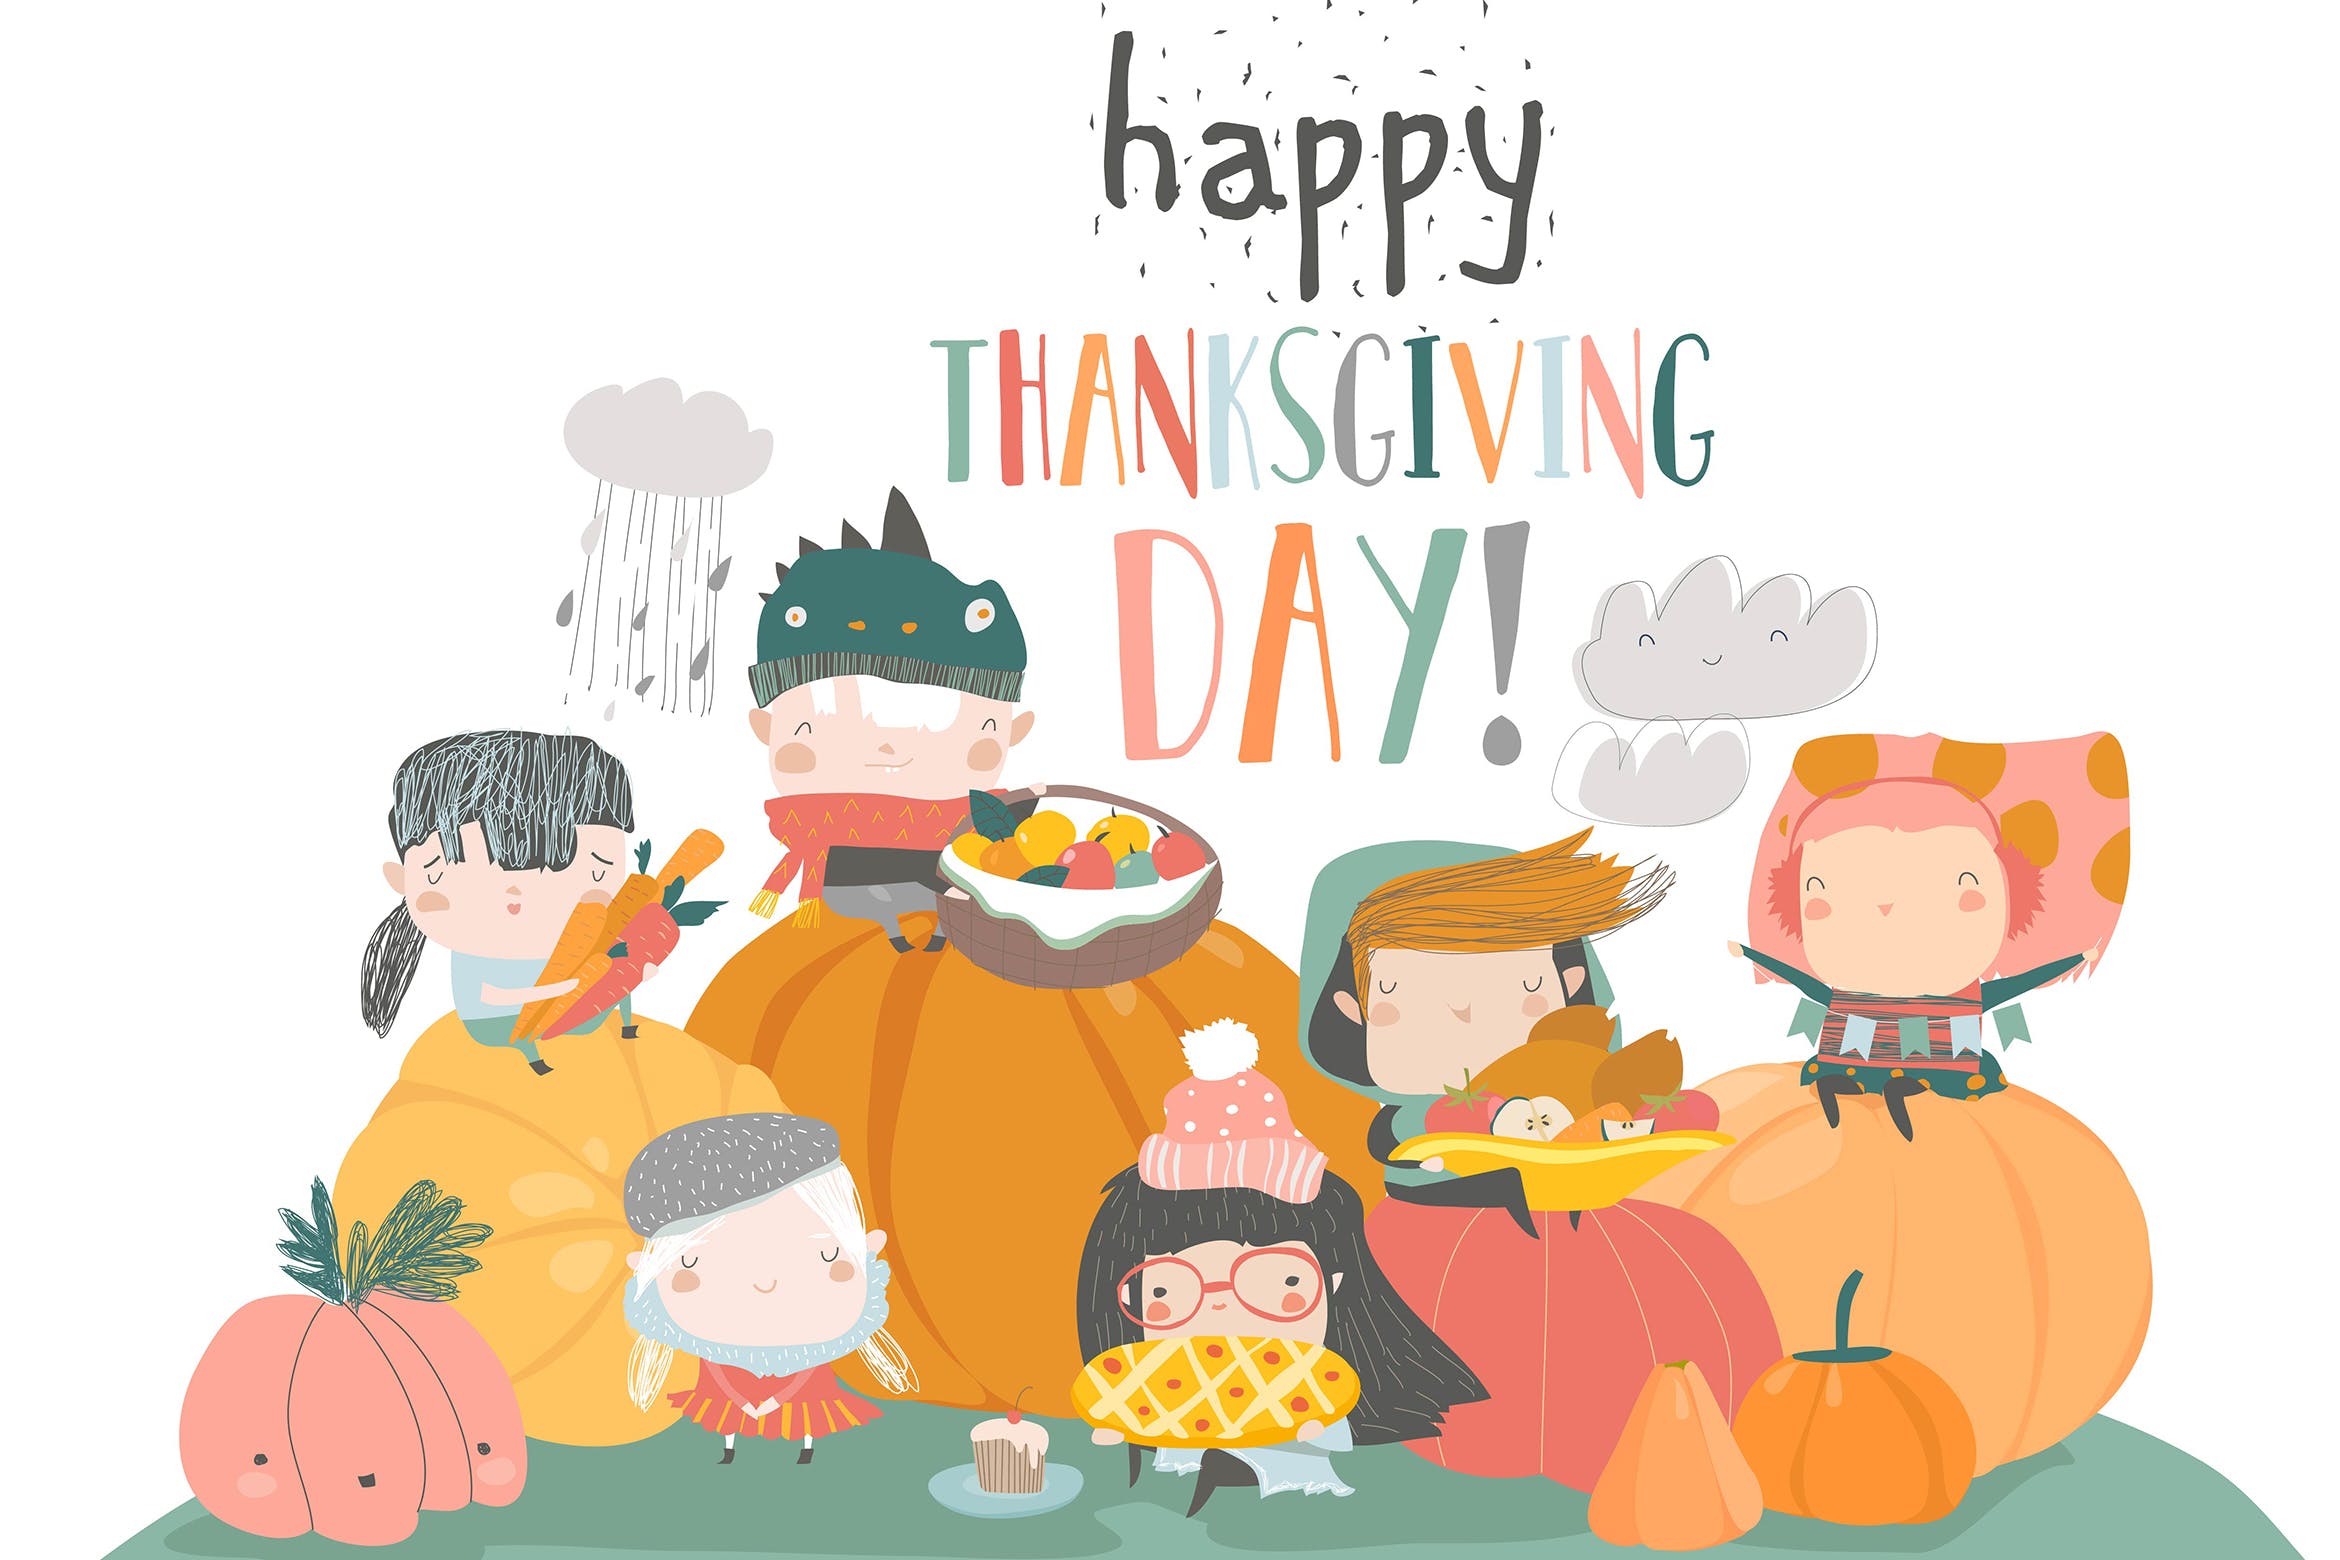 儿童卡通风格感恩节主题手绘矢量图形素材 Cartoon children harvesting. Happy Thanksgiving Da插图